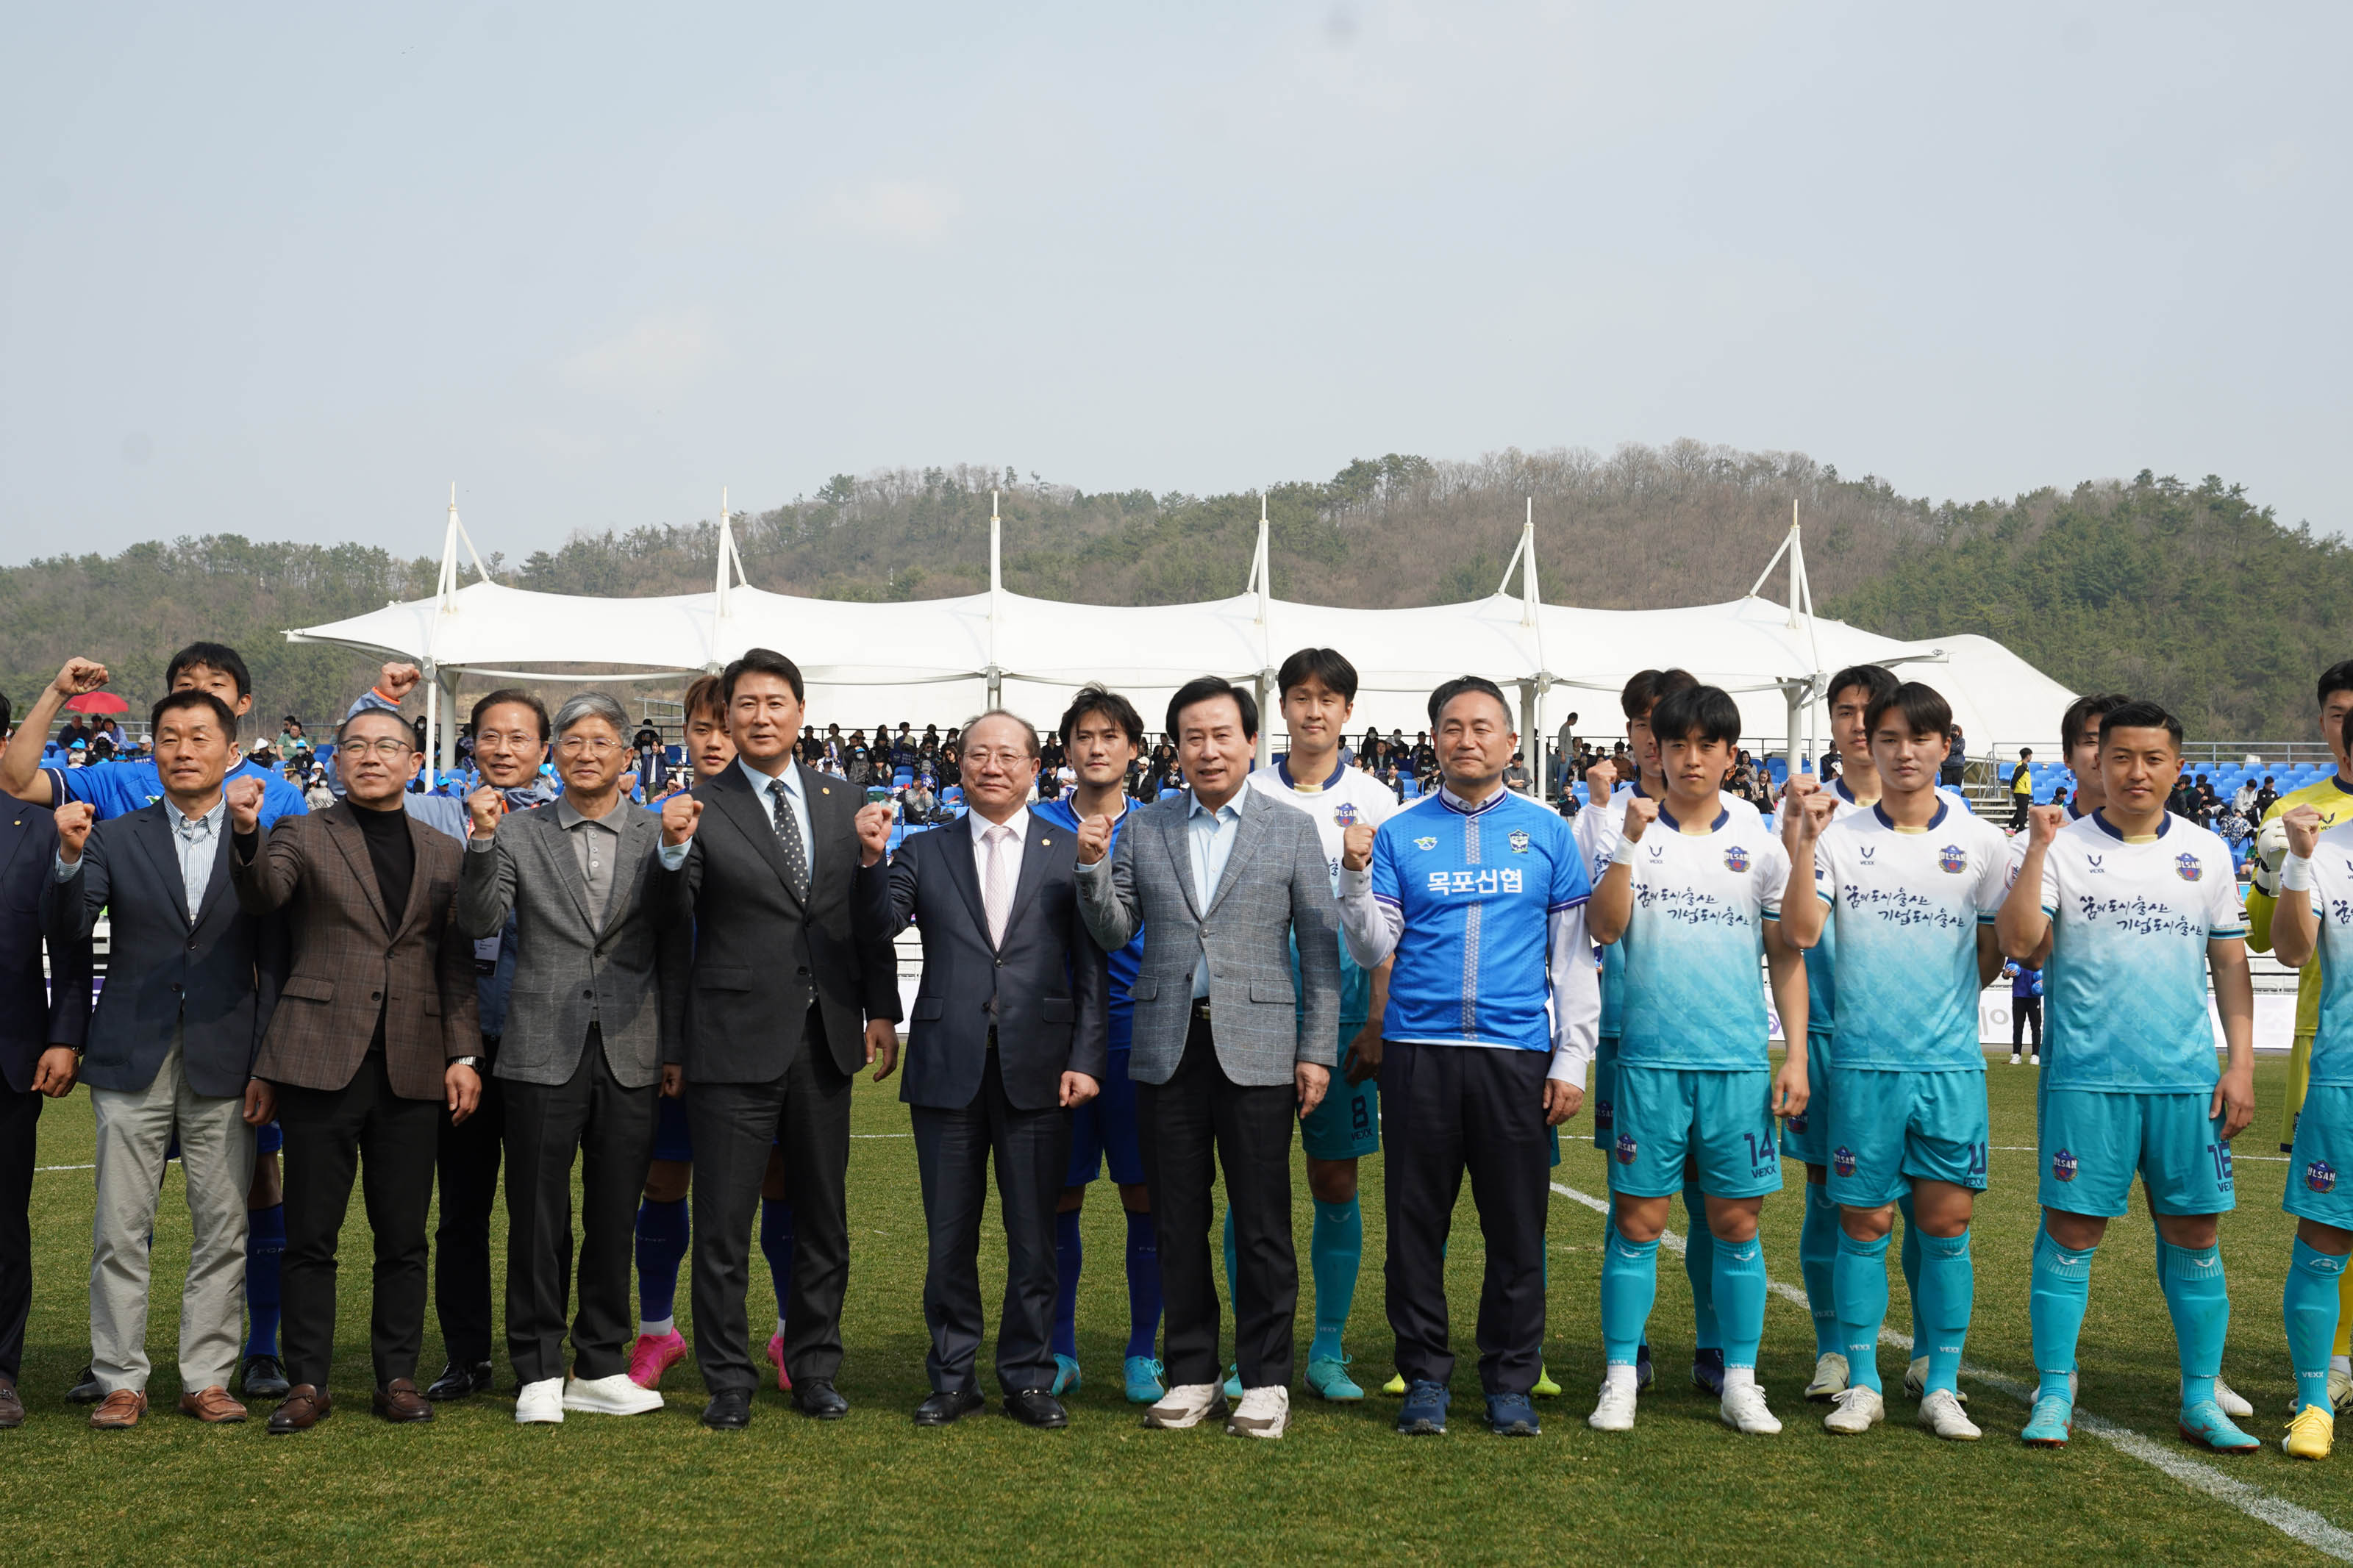 파란색 유니폼의 선수들과 민트색과 하얀색이 섞인 유니폼을 입은 선수들과 함께 박홍률 시장을 중심으로 정장을 입은 6여명의 사람들이 가로로 두 줄로 서서 화이팅을 외치는 사진